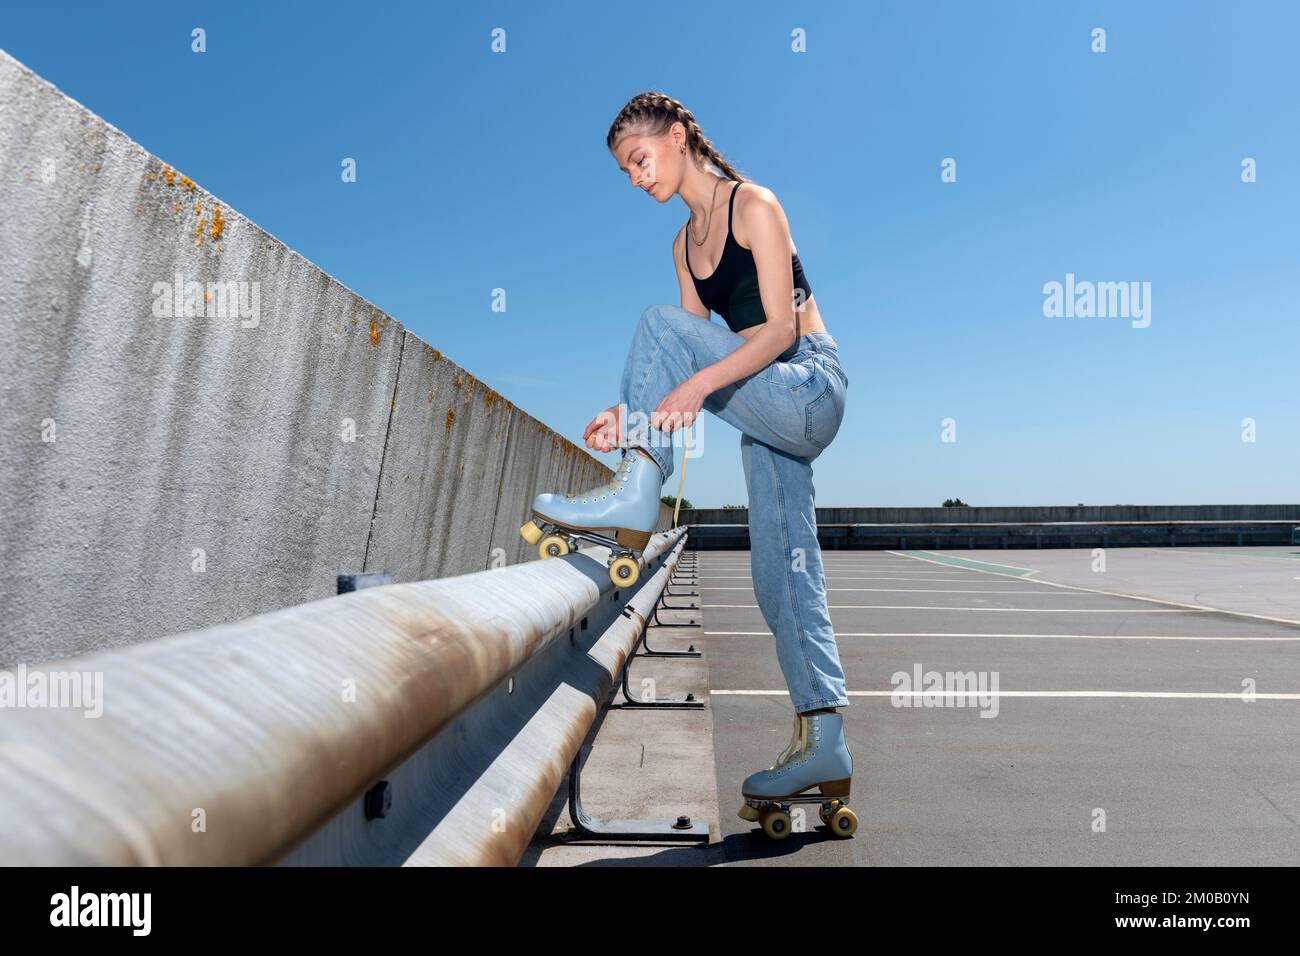 Chica amarrando sus patines, fondo urbano. Preparación para el patinaje sobre ruedas. Foto de stock